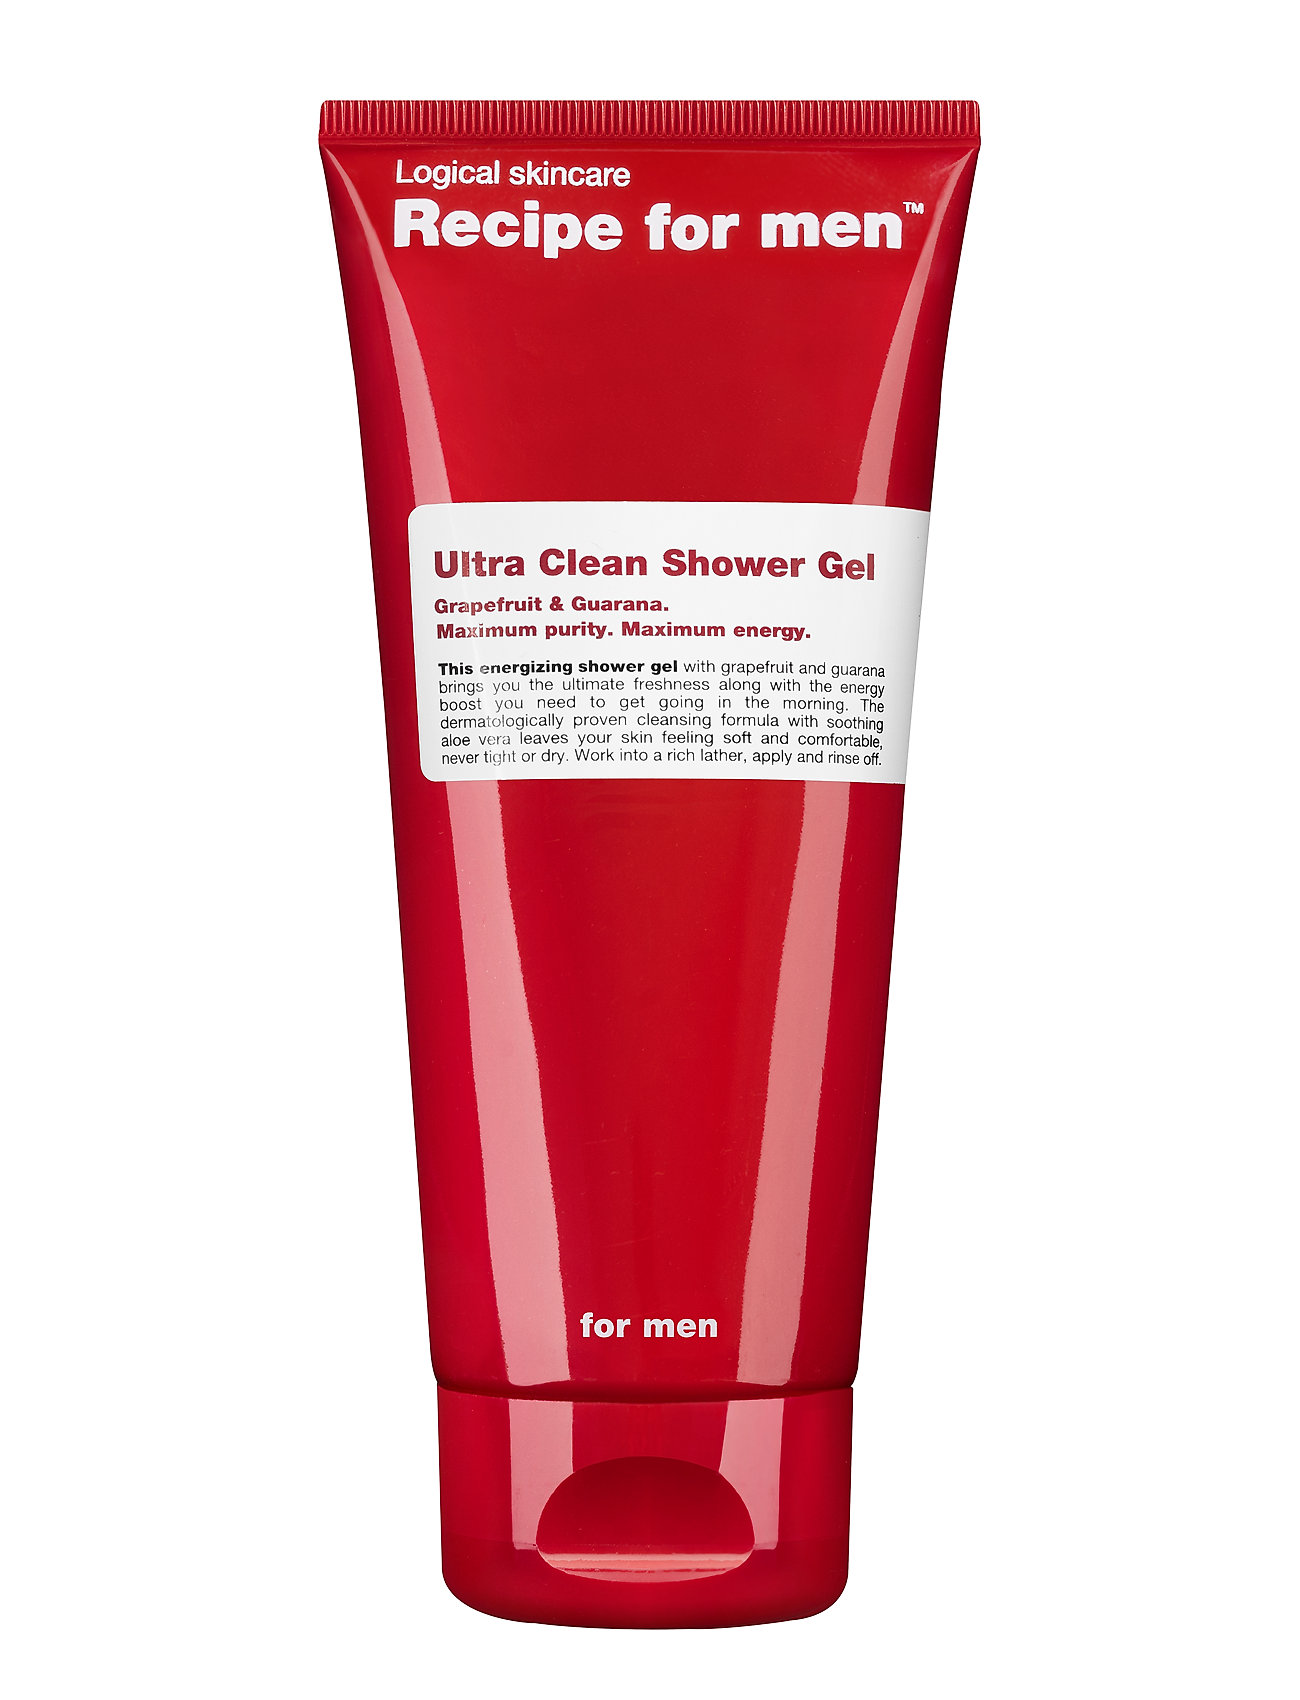 Ultra Clean Shower Gel Beauty MEN Skin Care Body Shower Gel Nude Recipe For Men, Recipe for Men